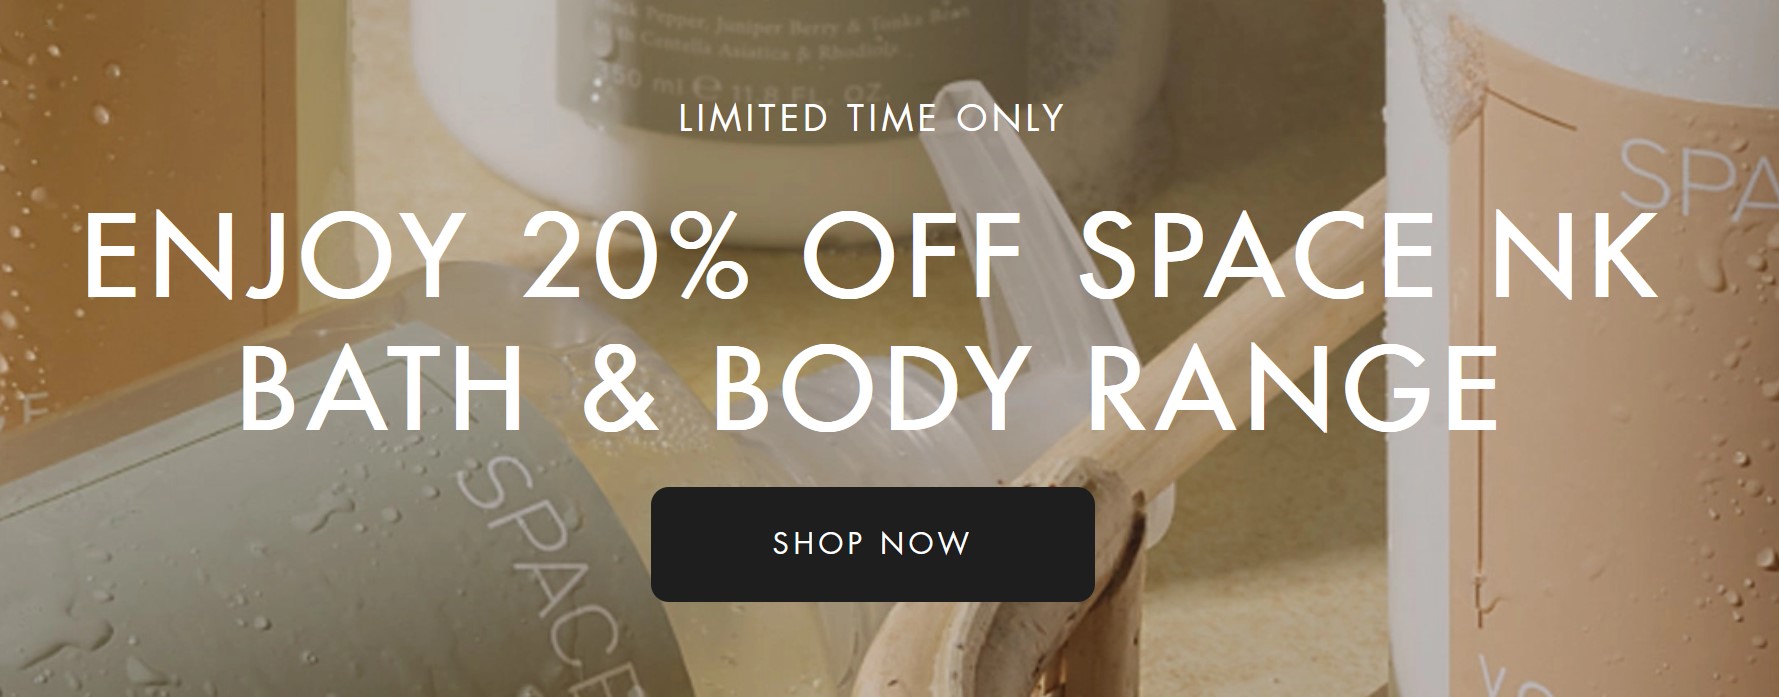 20% off Space NK Bath & Body